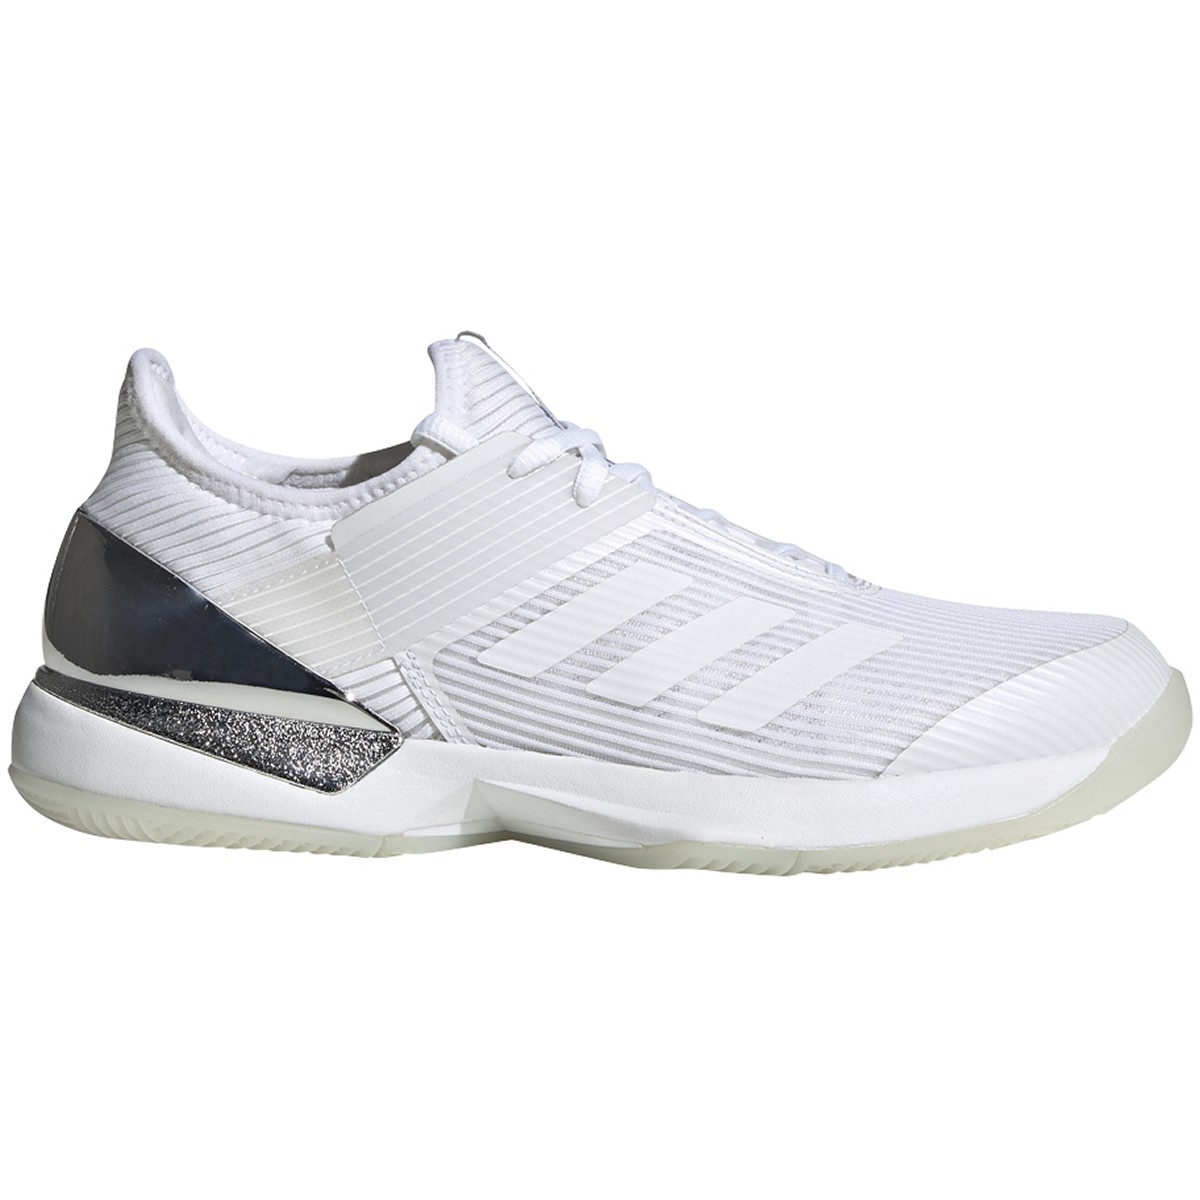 Adidas Women&amp;apos;s Adizero Ubersonic 3 Tennis Shoes (White/Matte Silver)